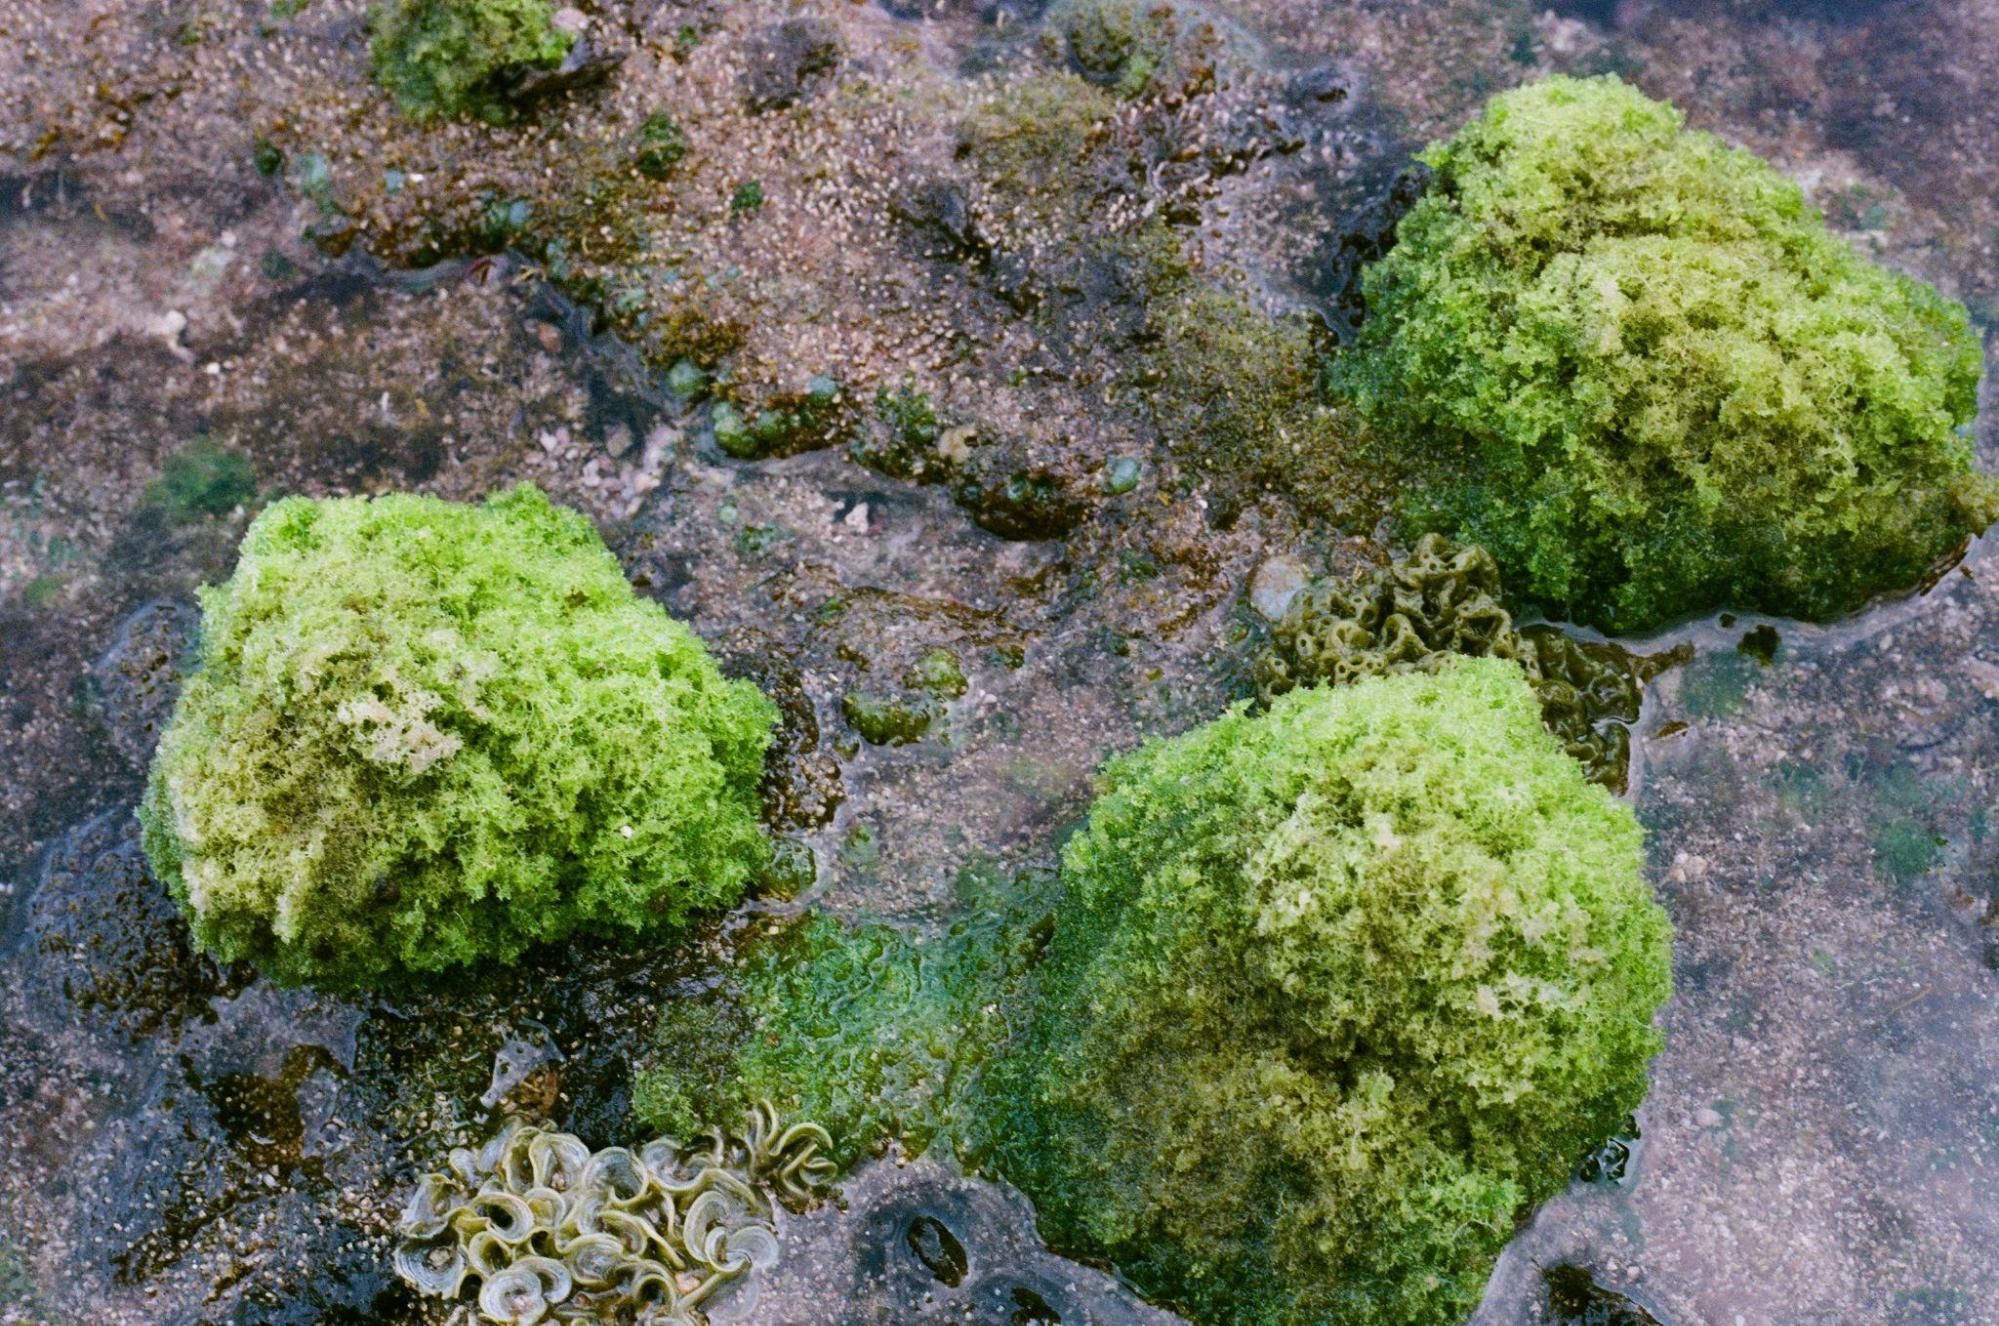 珊瑚礁石塊和礫石提供潮間帶生物最佳的居住場所。敏迪提供